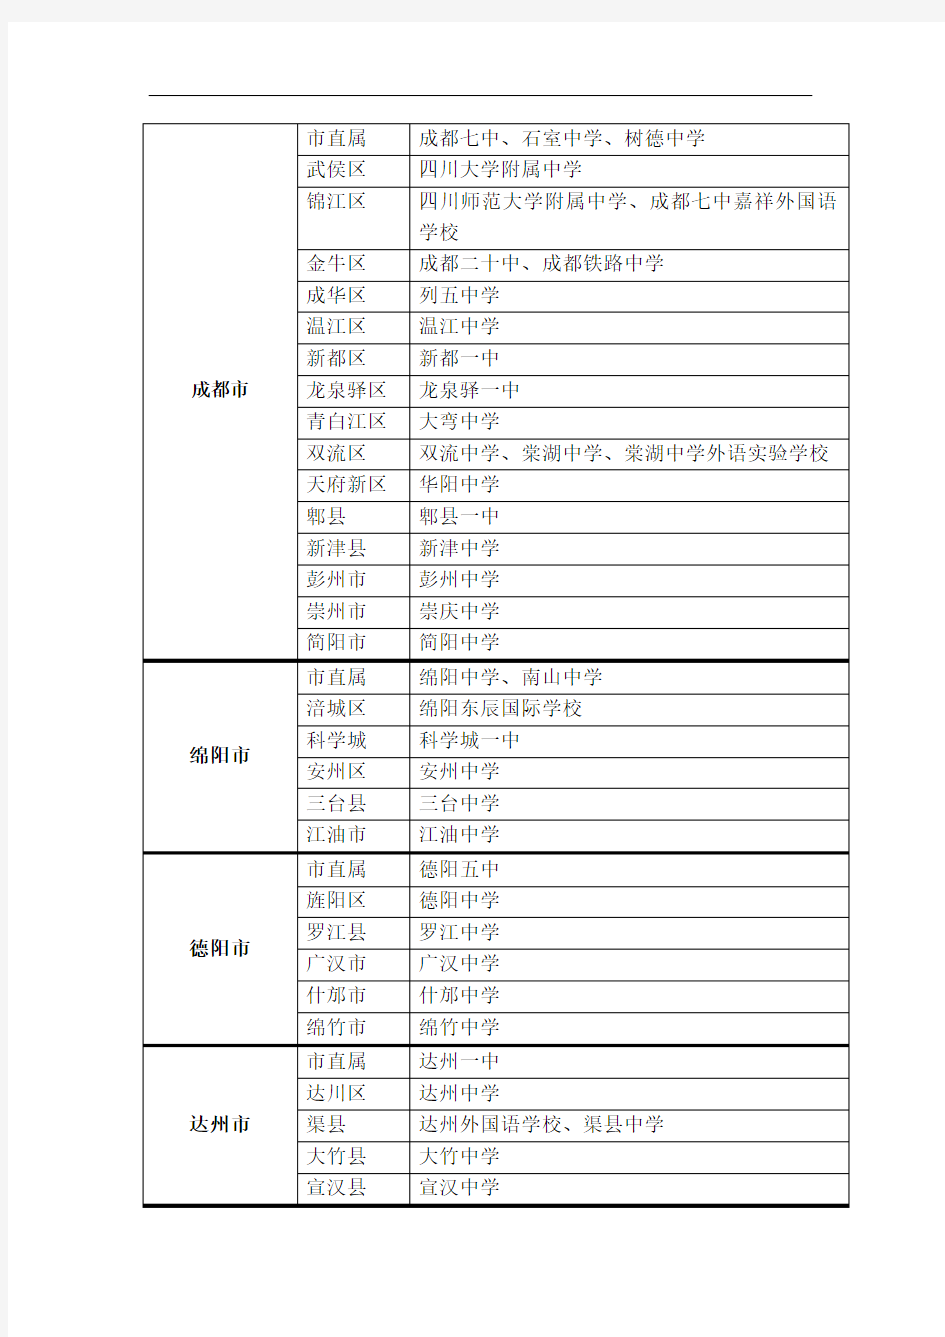 四川省一年级示范性普通高中名单